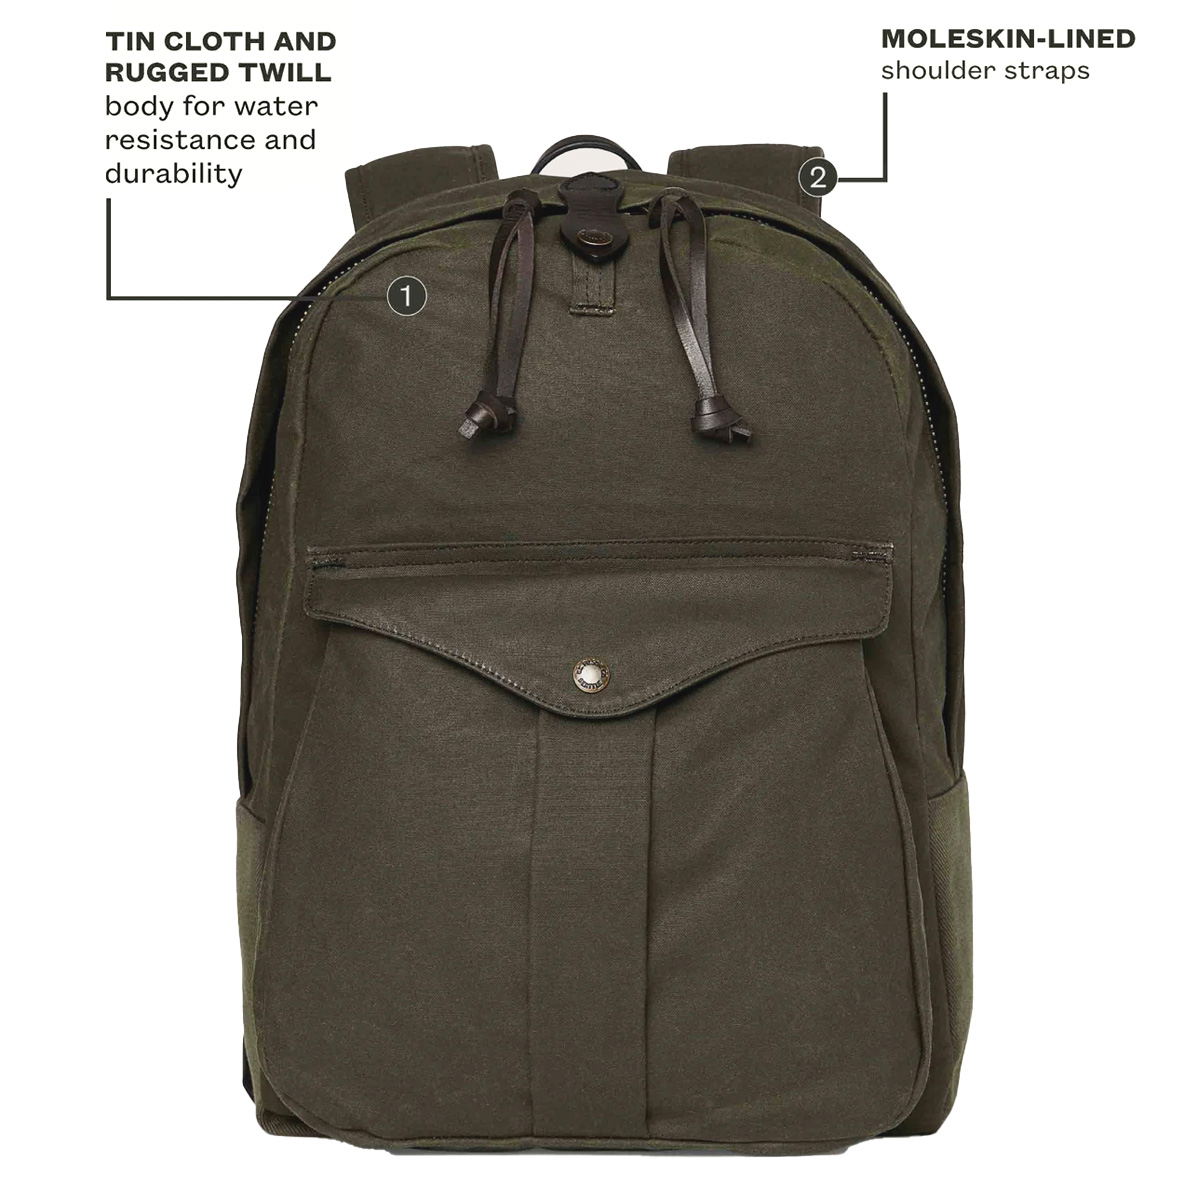 Filson Journeyman Backpack 20231638 Otter Green, hergestellt aus Tin Cloth und Rugged Twill Canvas für Wasserdichtigkeit und Langlebigkeit